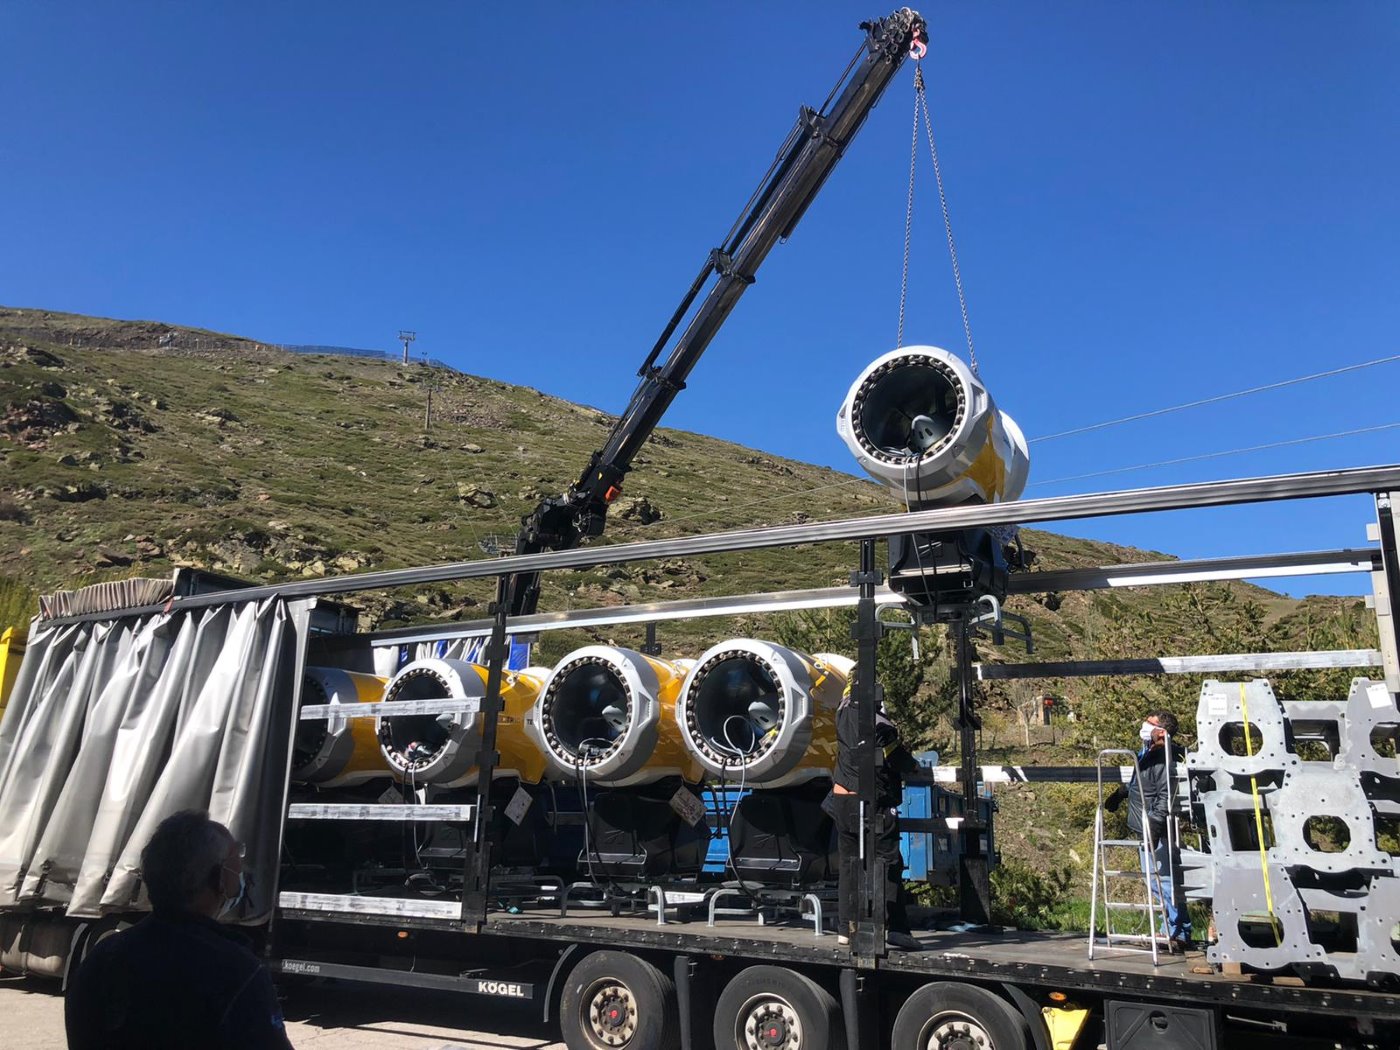 Sierra Nevada ya tiene listos los 100 nuevos cañones para abrir el 28 de noviembre